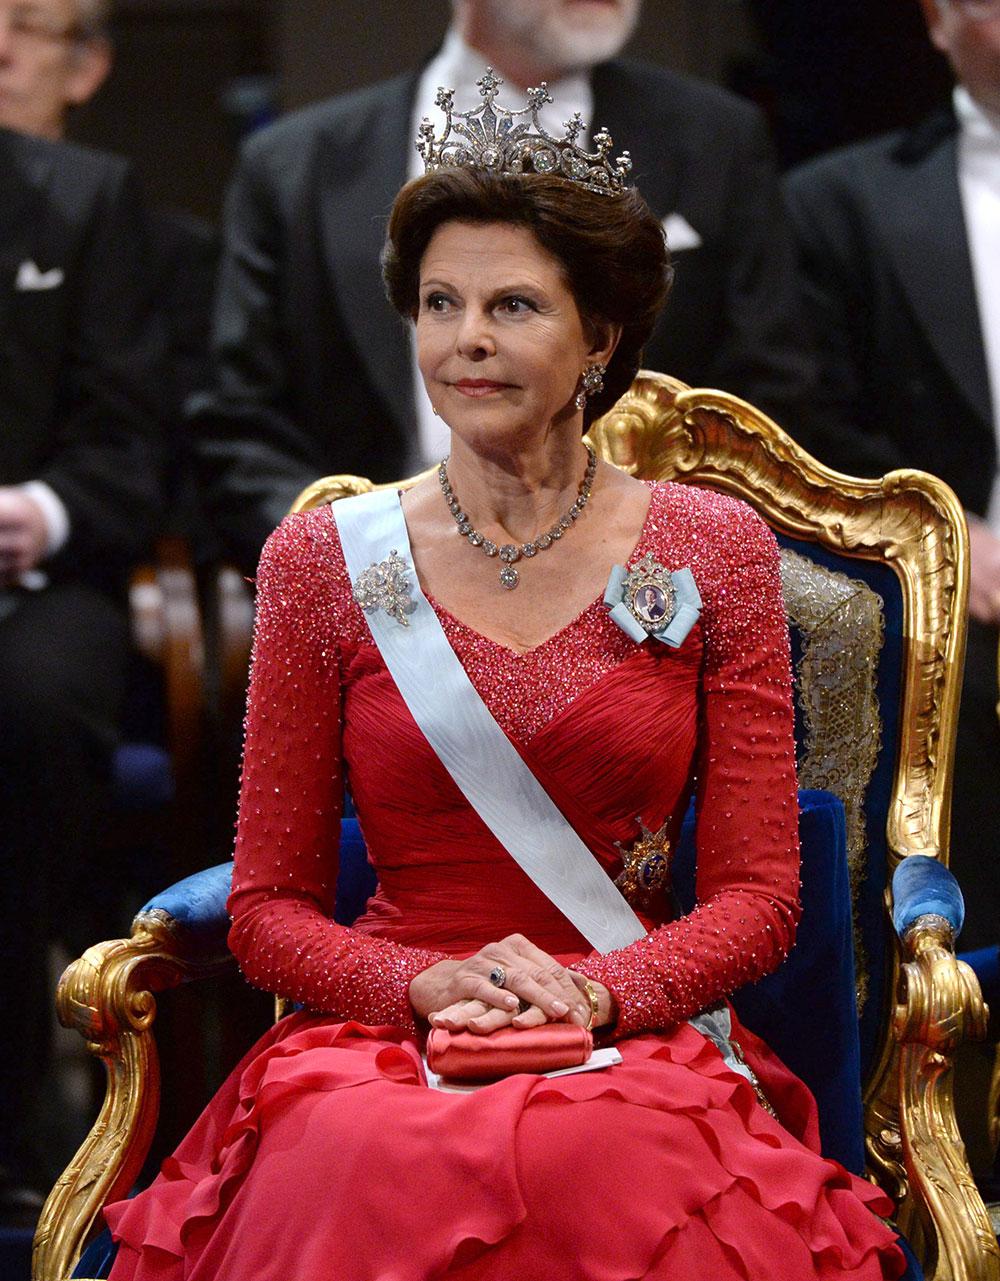 Innan drottning Silvia kom in i bilden blåste starka vänstervindar som ville avskaffa monarkin.